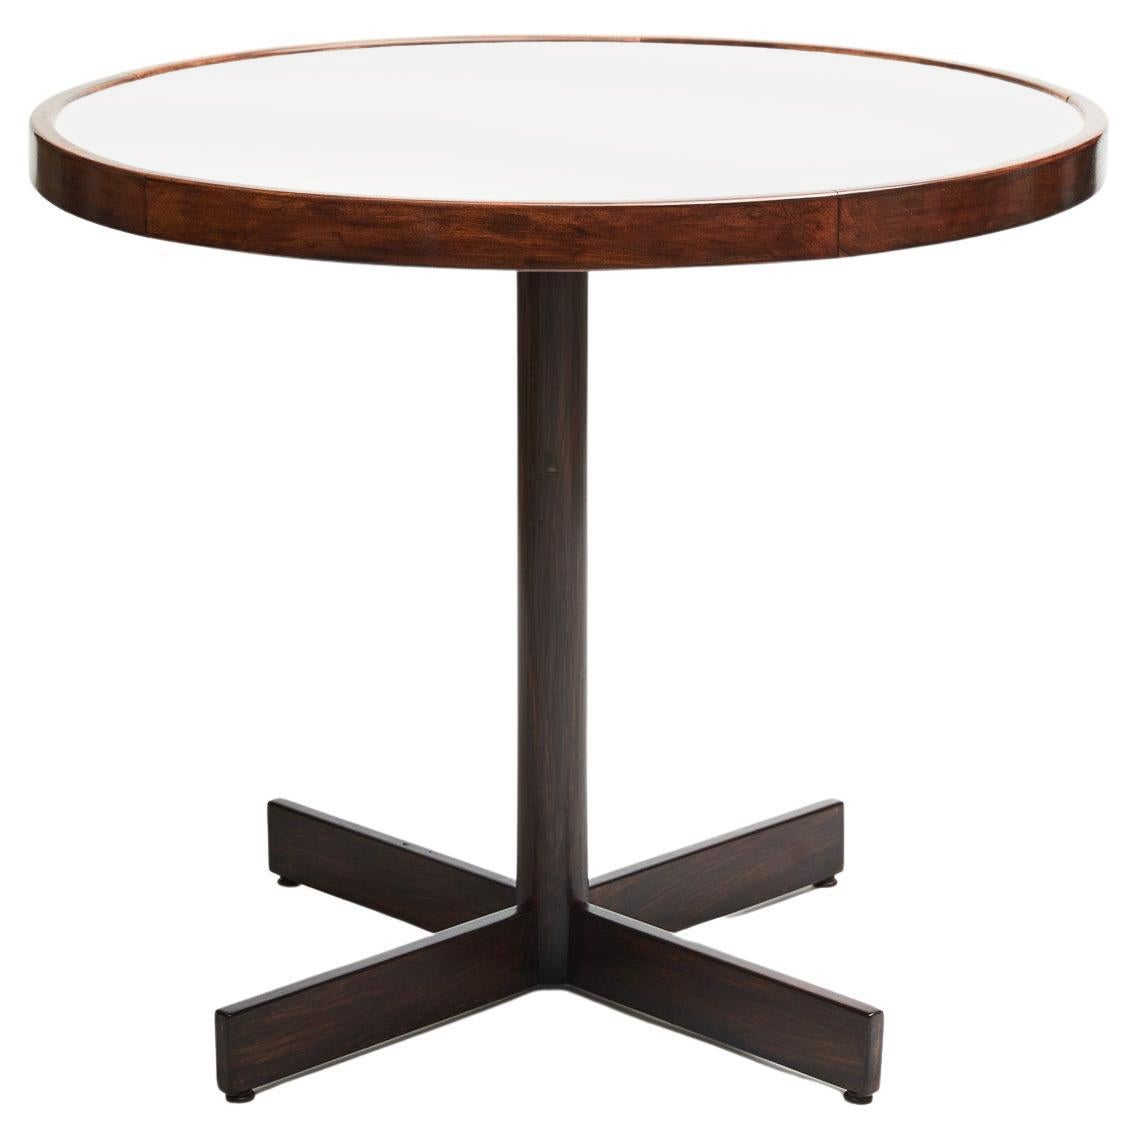 Disponible aujourd'hui, cette table de cocktail/petit déjeuner moderne du milieu du siècle en bois dur et plateau blanc de Jorge Zalszupin pour L'Atelier est magnifique !

La table a une base en fer, des finitions en bois dur caviuna et un plateau